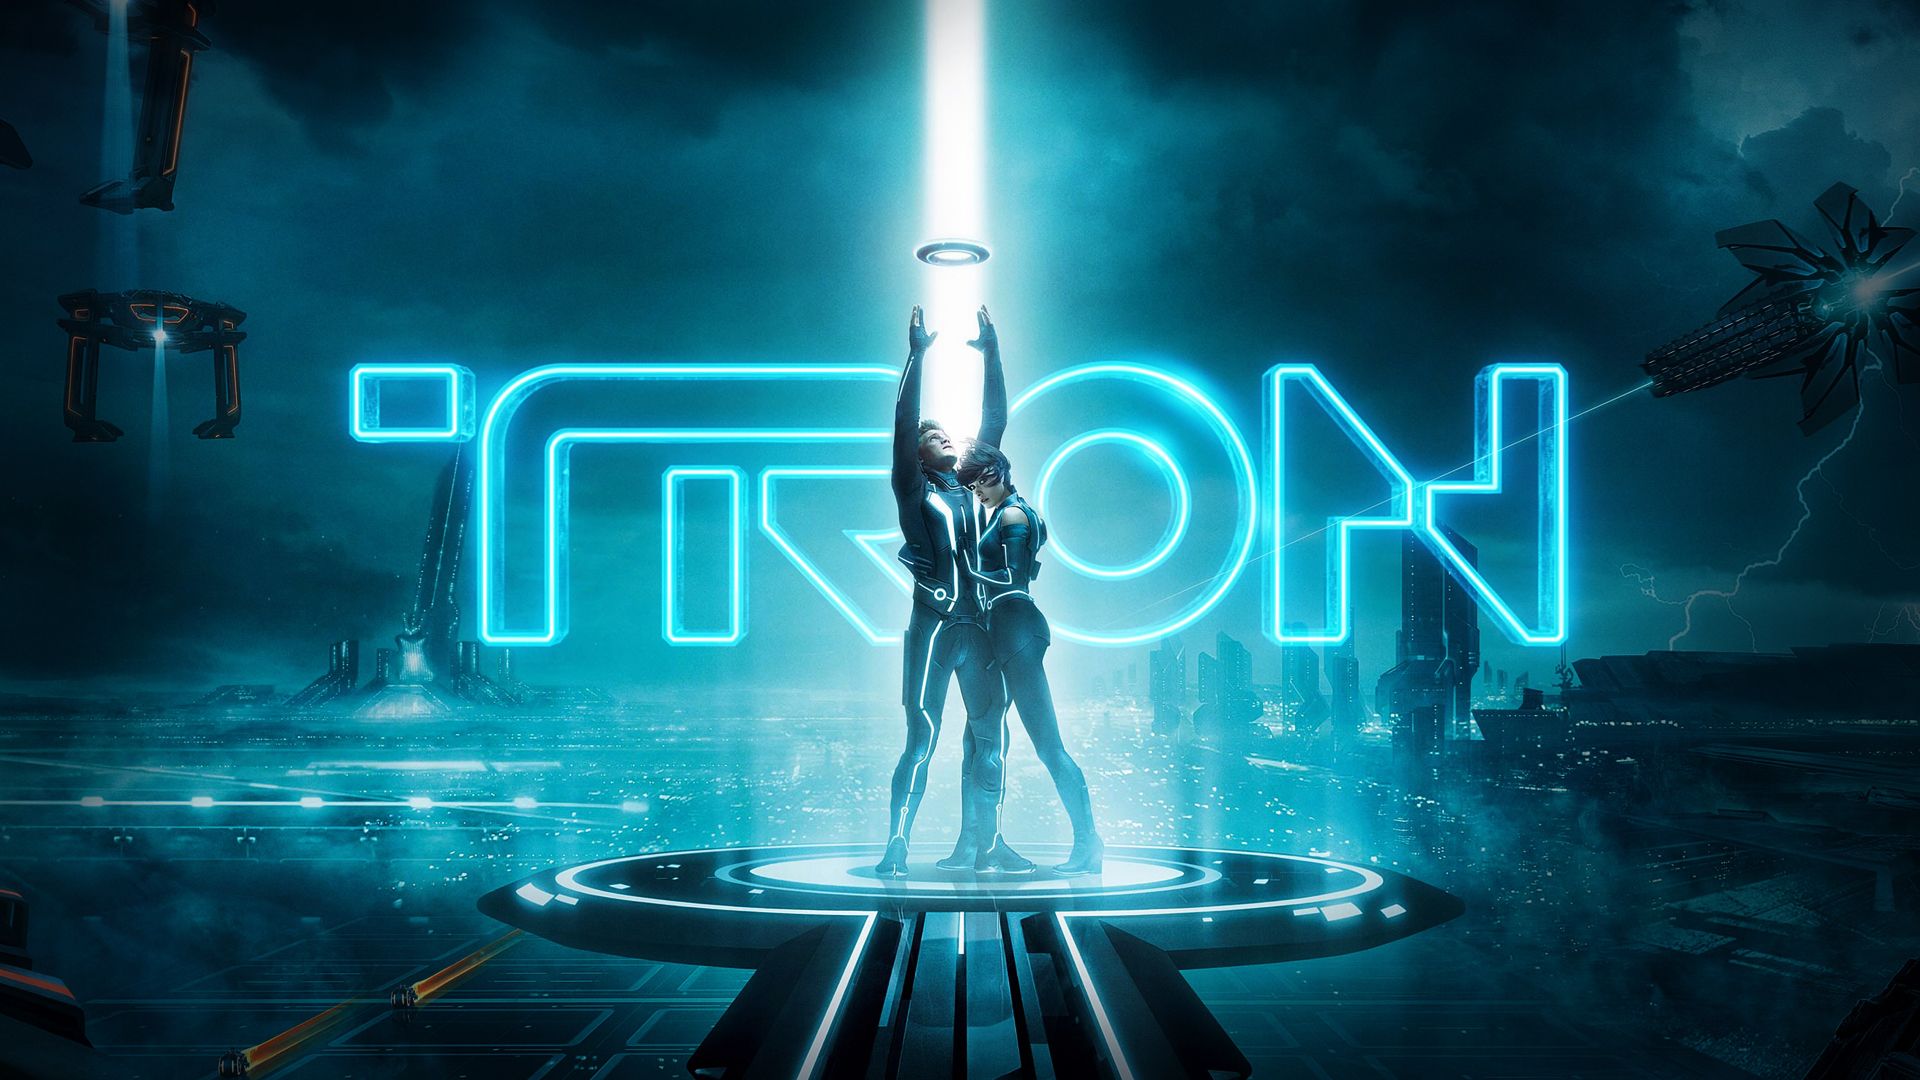 Tron-Legacy-HD-Wallpaper.jpg